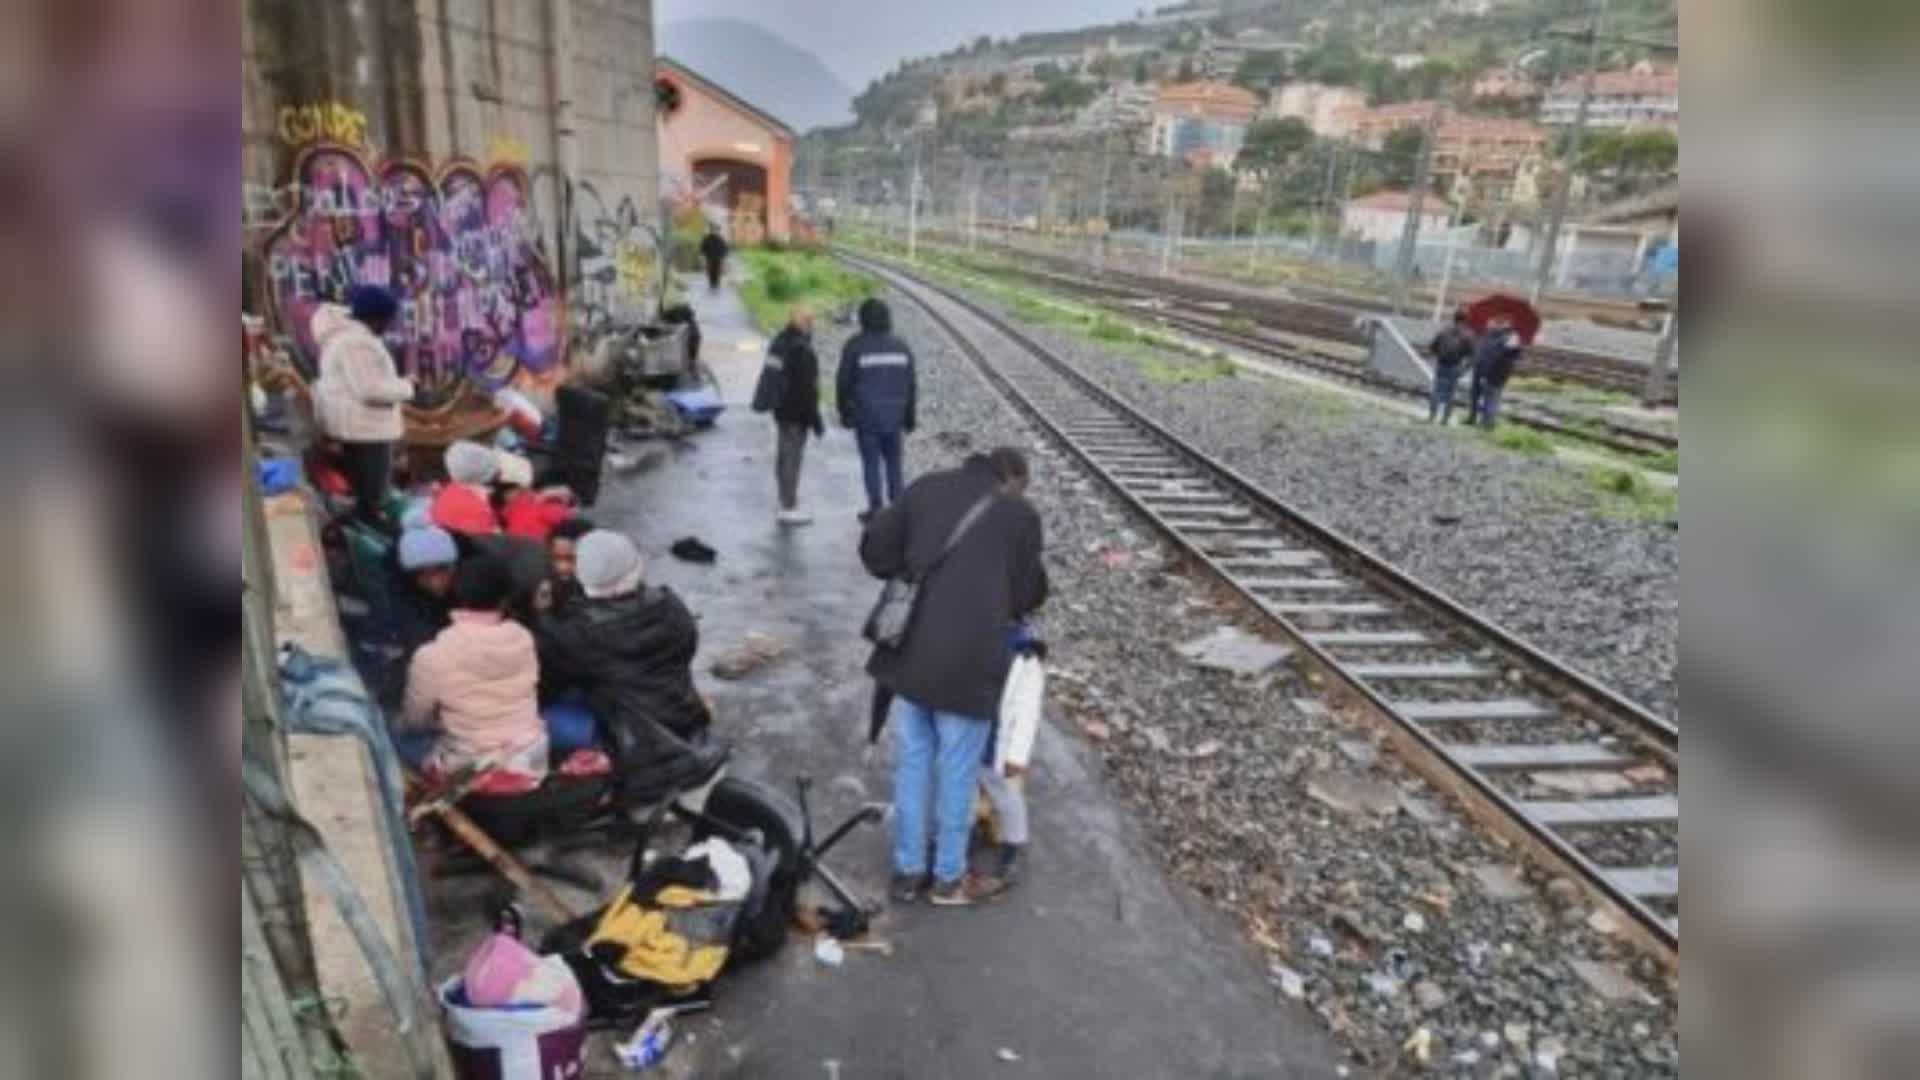 Migranti, Toti: "Data disponibilità al ministro per un Cpr in Liguria"